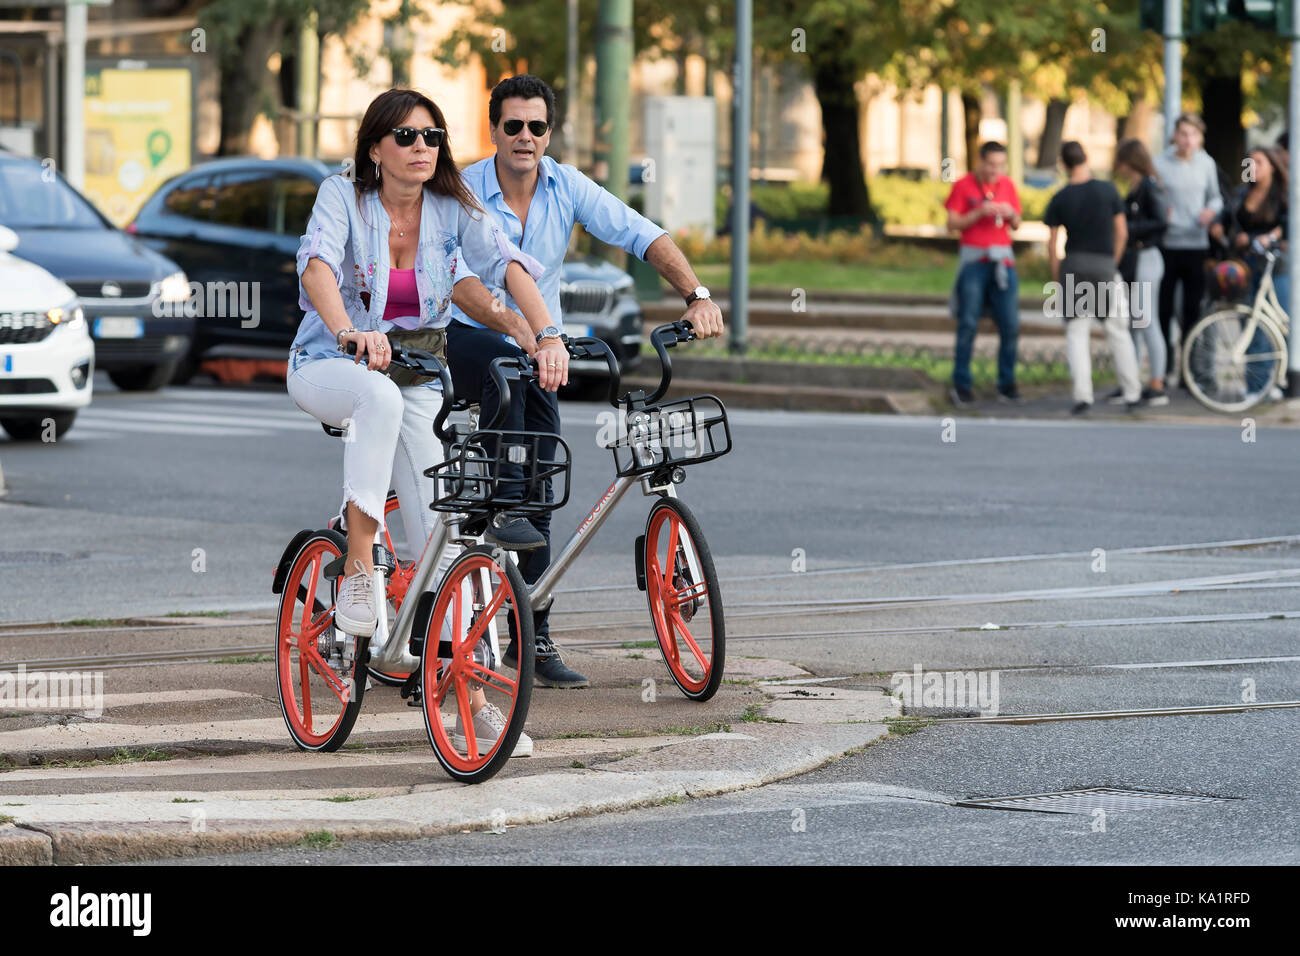 Milan, Italie - 23 septembre 2017 : maintenant à milan entreprise chinoise mobike fournit un service de partage de vélos innovant Banque D'Images